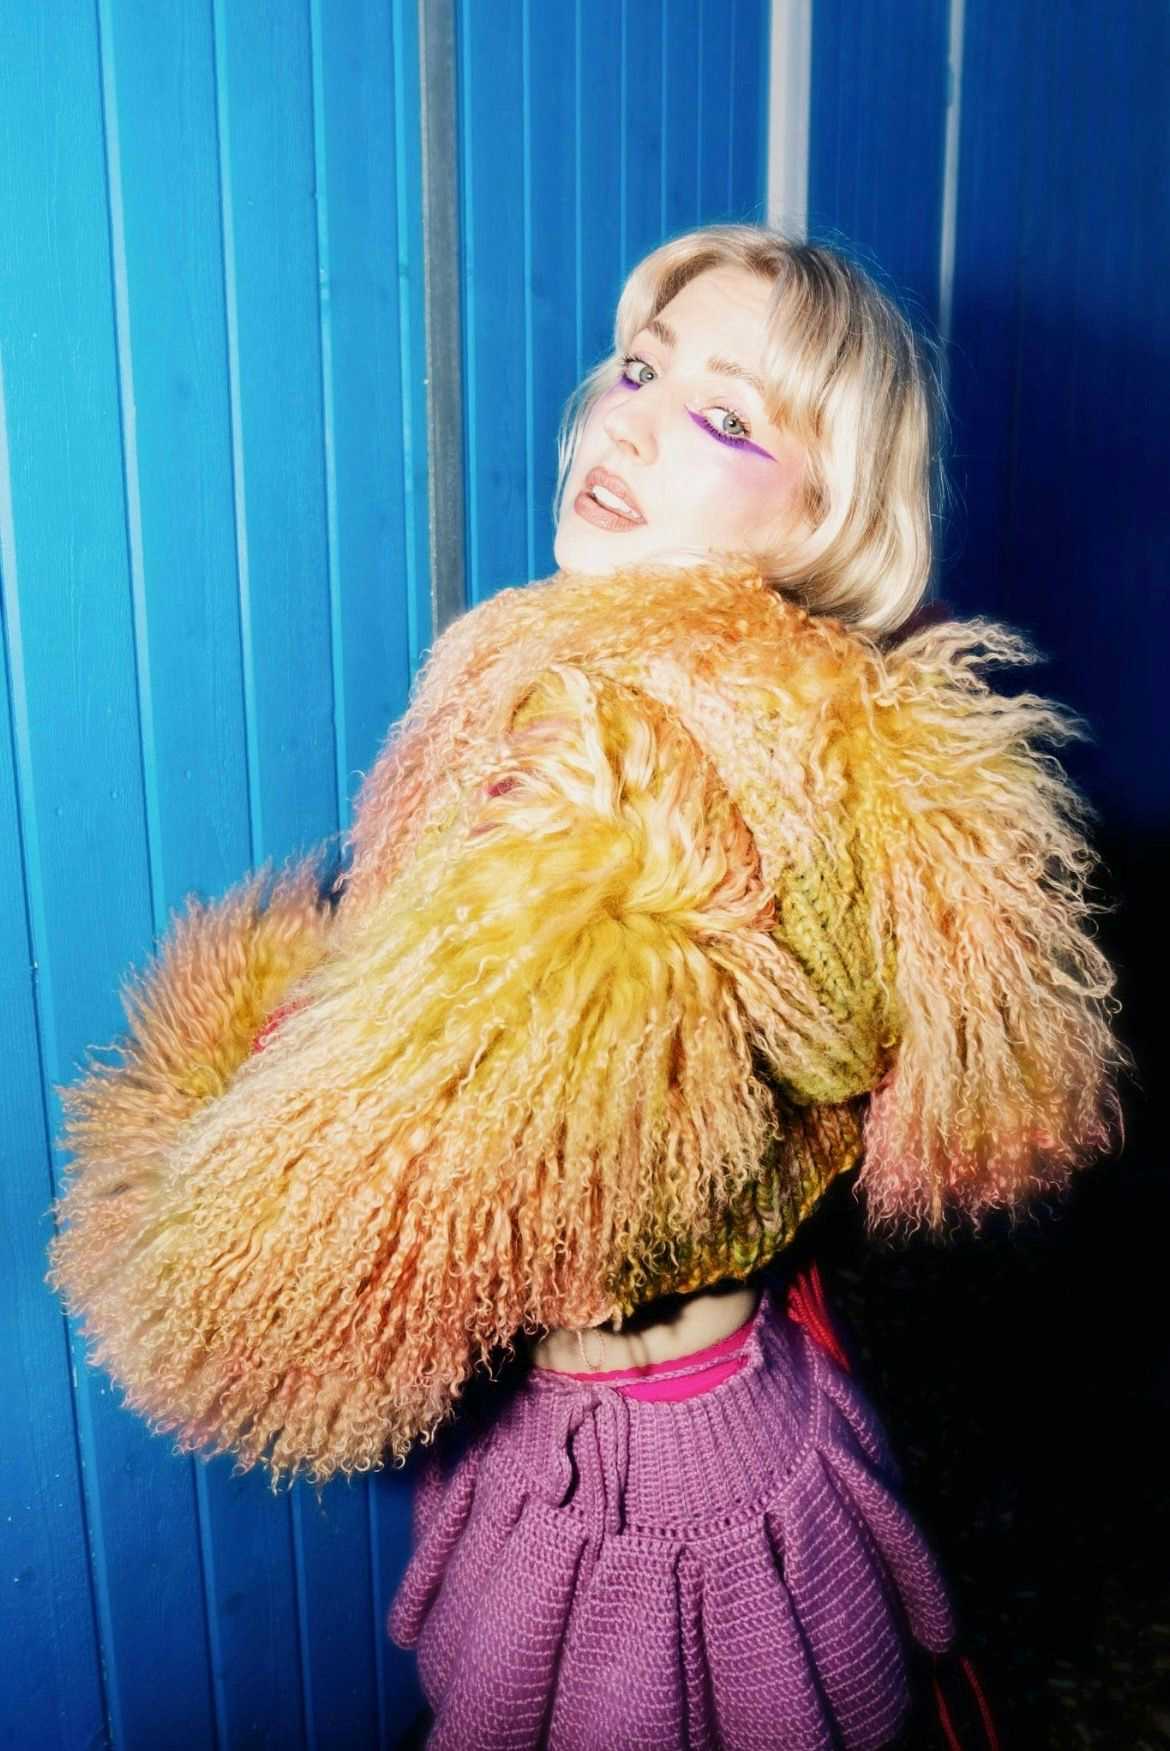 Bilde av artisten Veronica Maggio i fluffy jakke mot blåmalt vegg